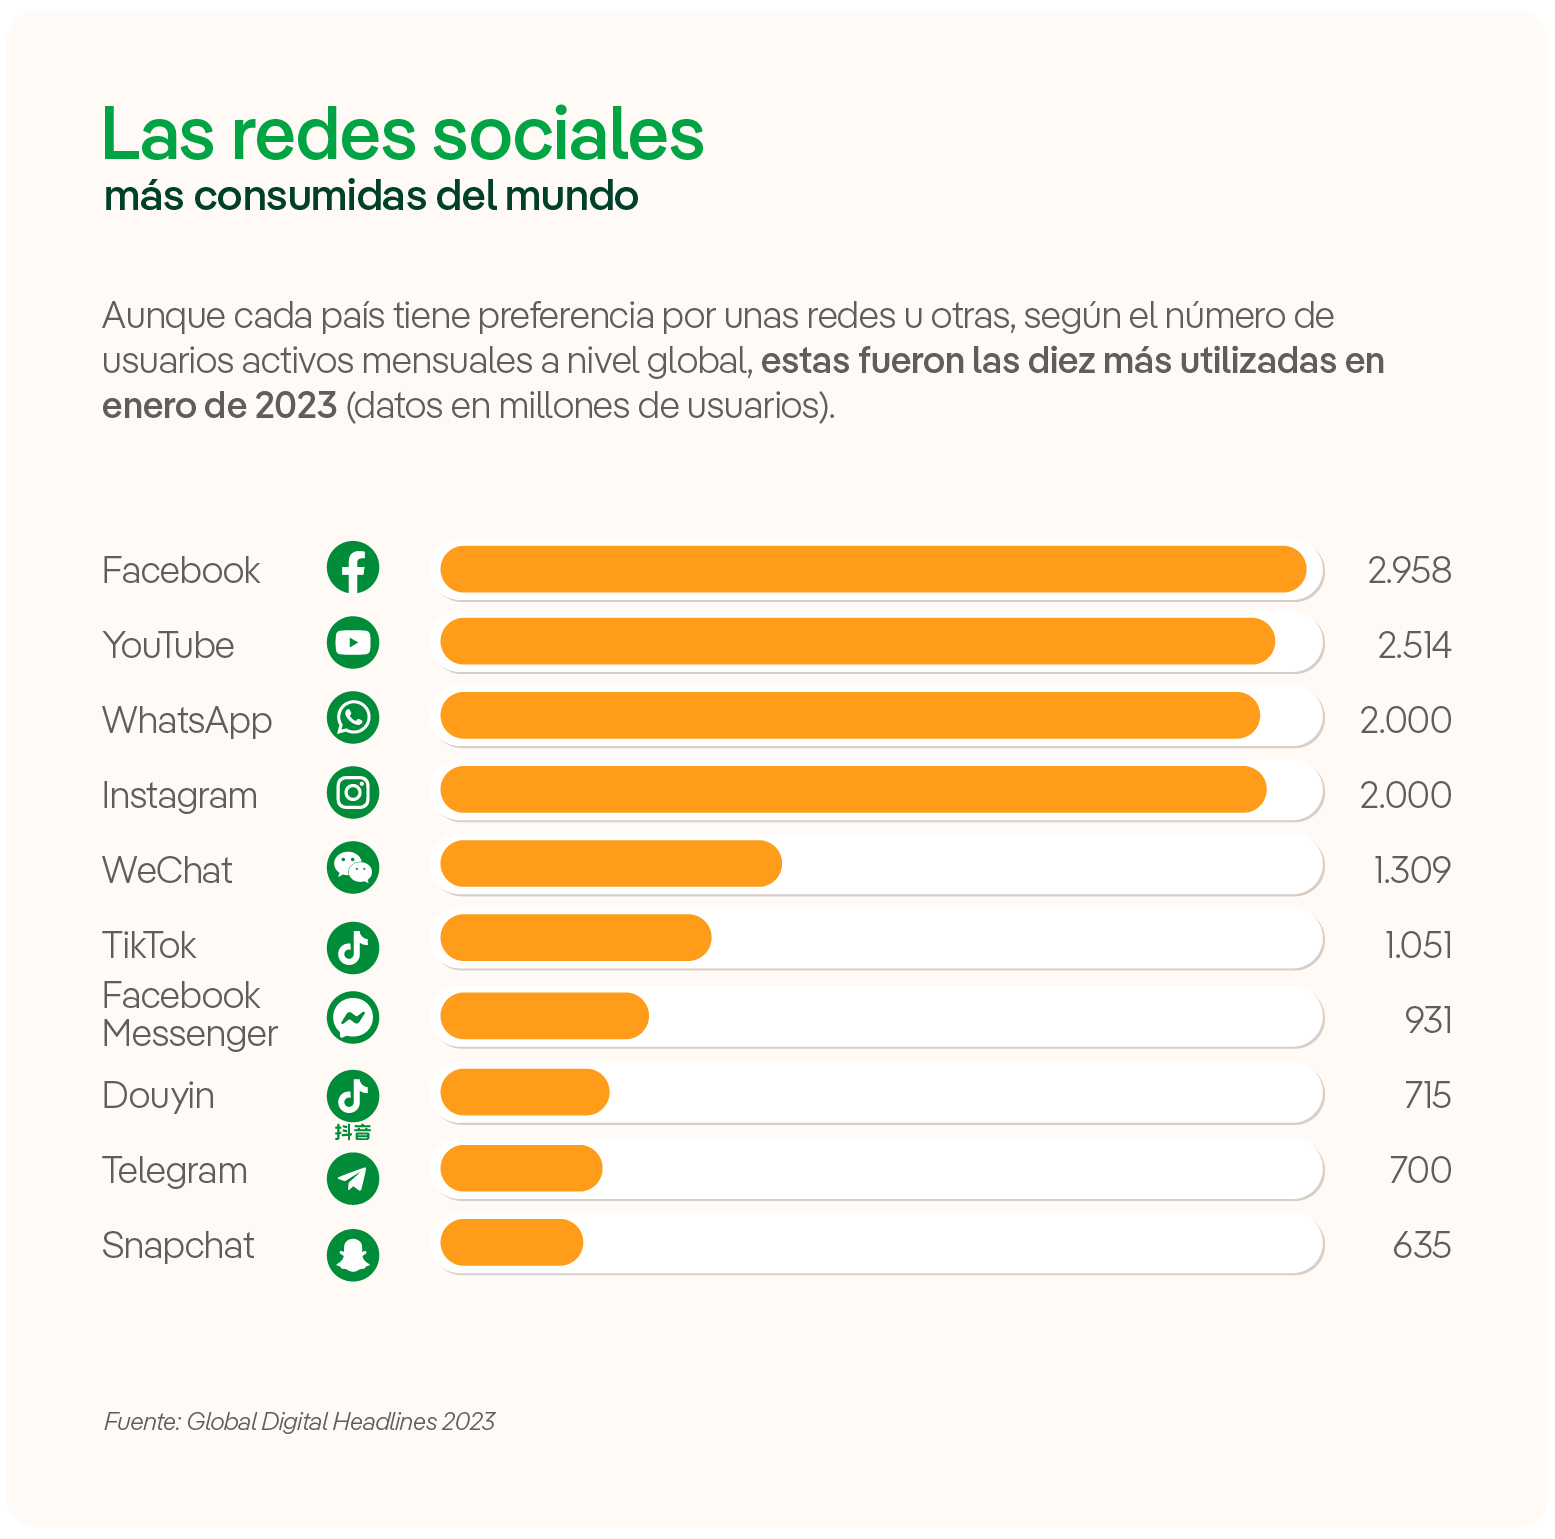 Las redes sociales más consumidas del mundo.